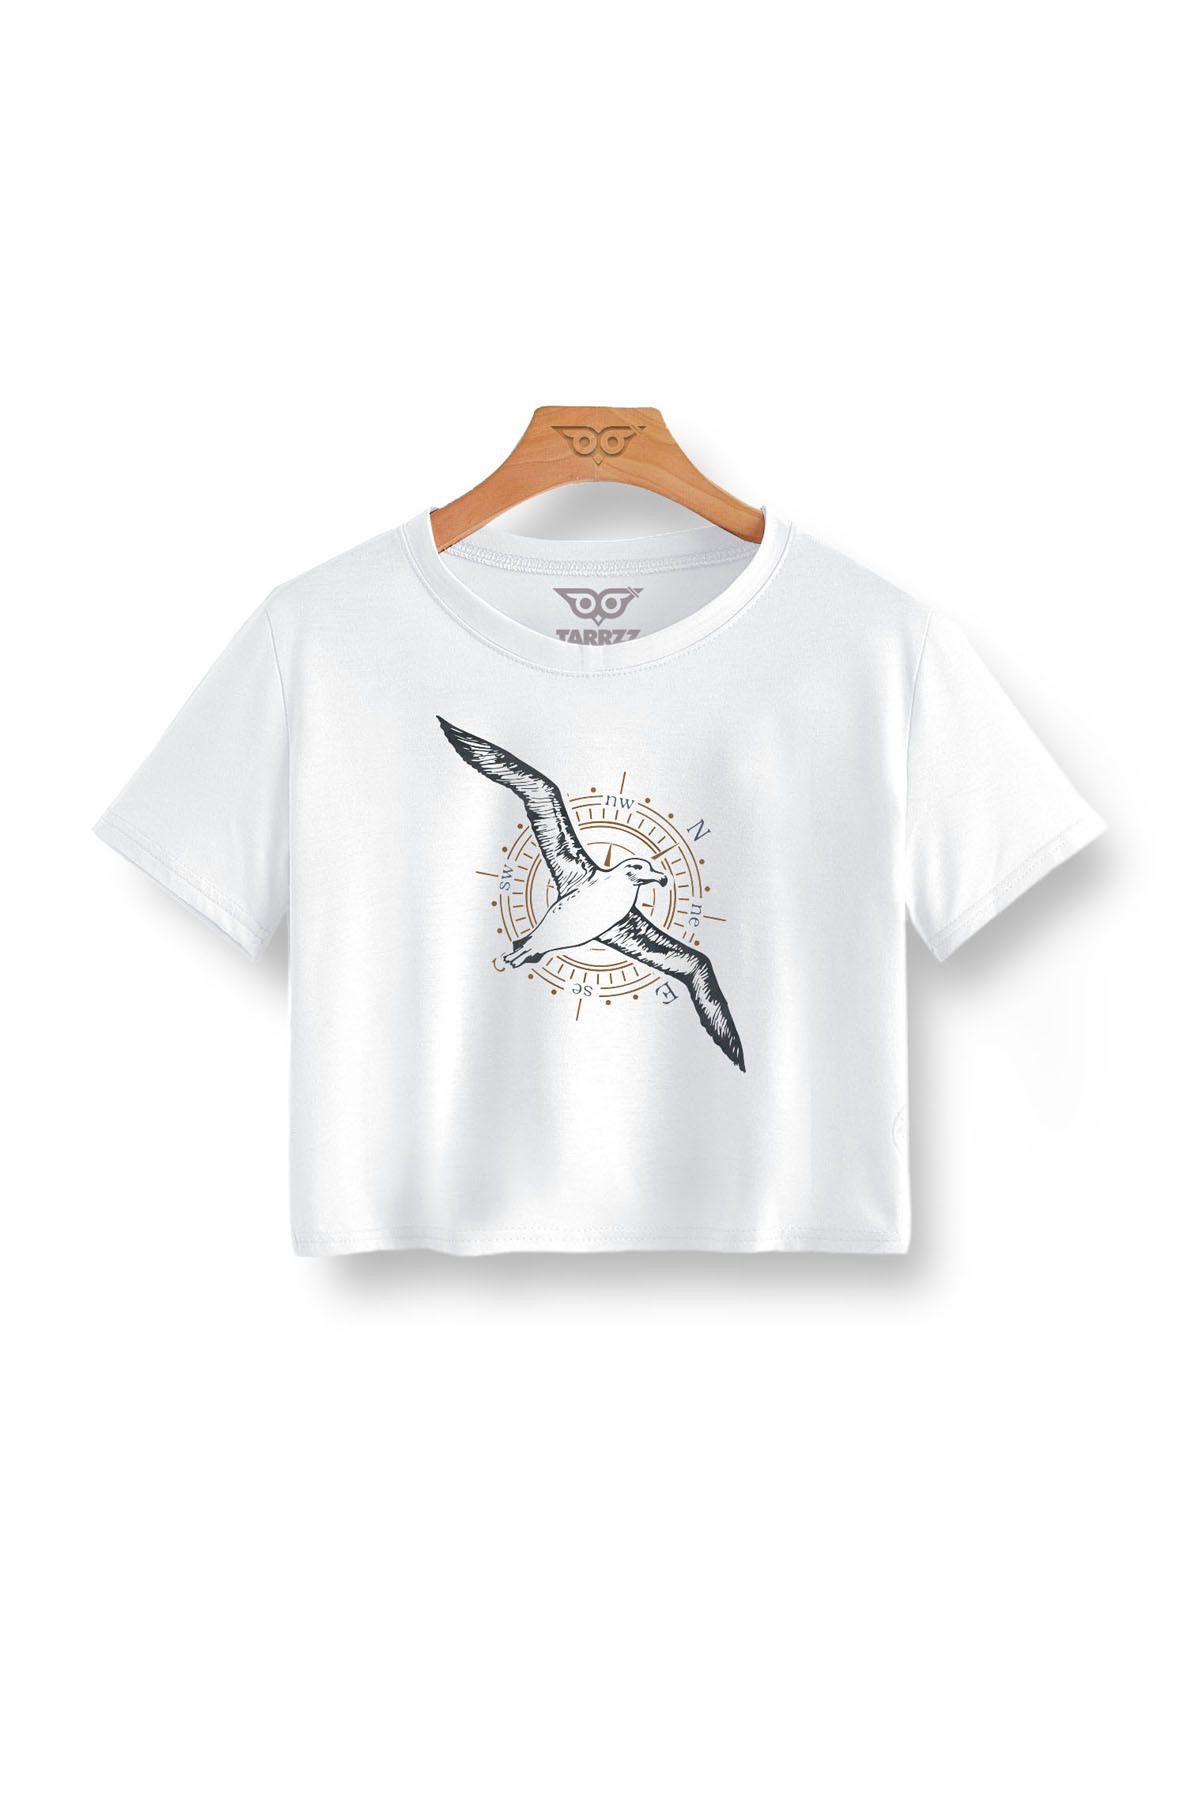 Tarrzzcom Albatros Tasarım Crop Tişört Kısa Kollu Bisiklet Yaka Pamuklu Baskılı Crop Top T-shirt